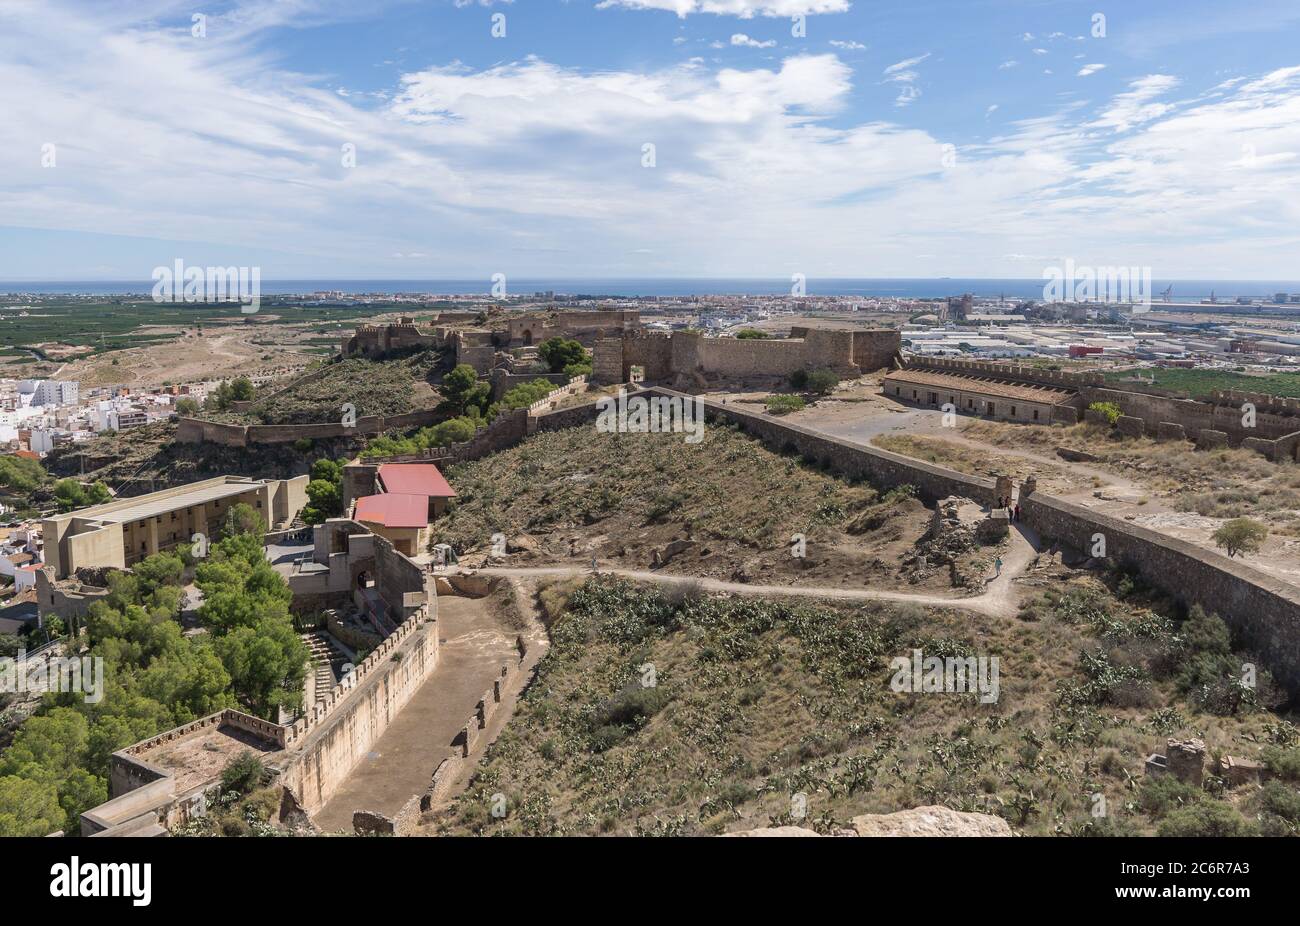 Château de fortification romaine de Sagunto près de Valence Espagne vue panoramique, l'ancien théâtre romain restauré à gauche, en arrière-plan le port de Sagunto Banque D'Images